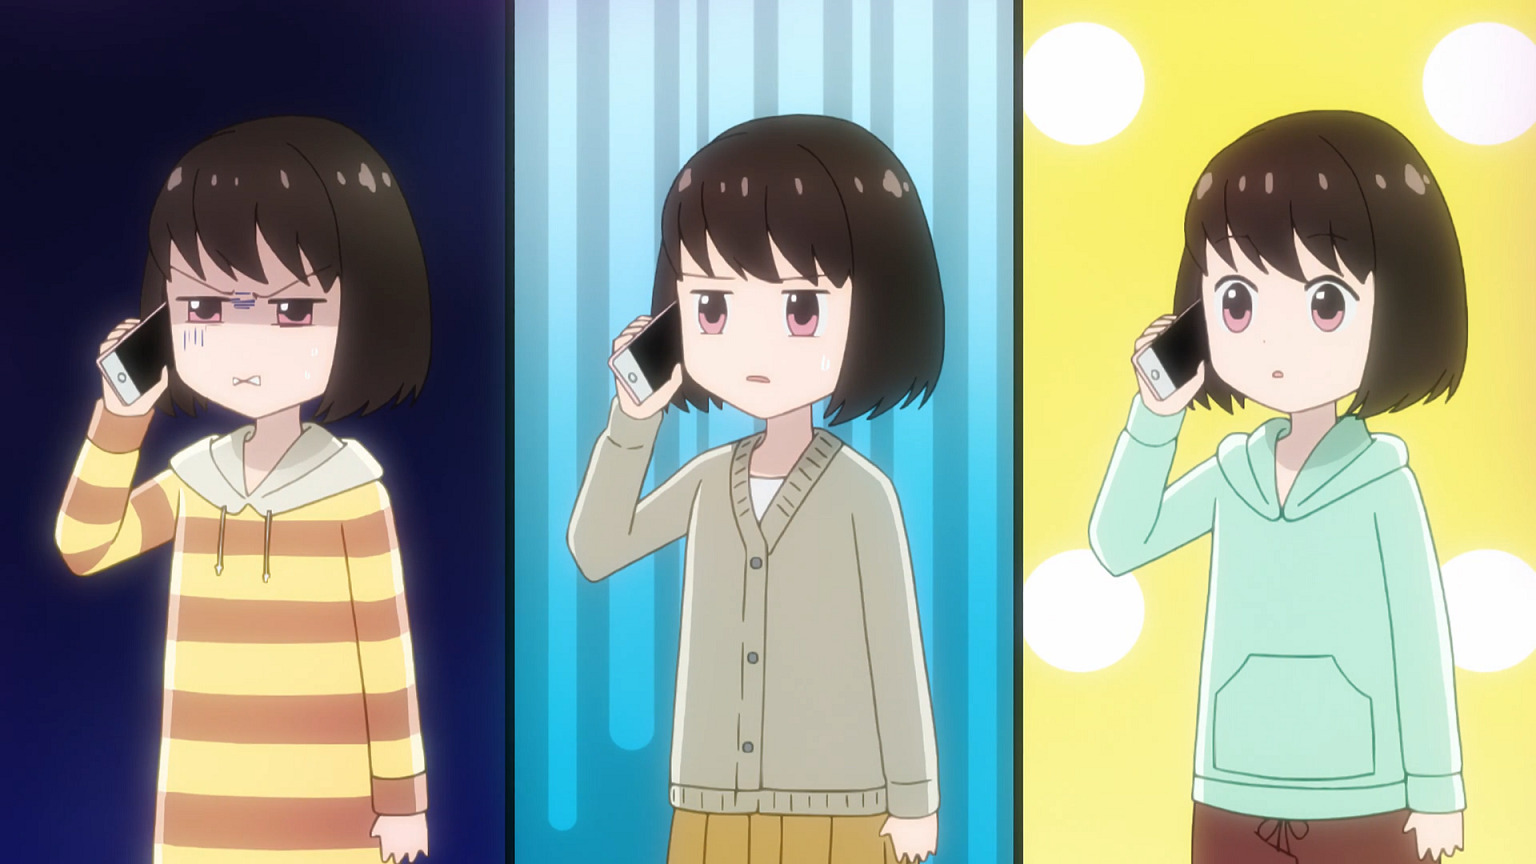 Koikimo-episode-7-Ichika-Ichika's-everyday-annoyed-face